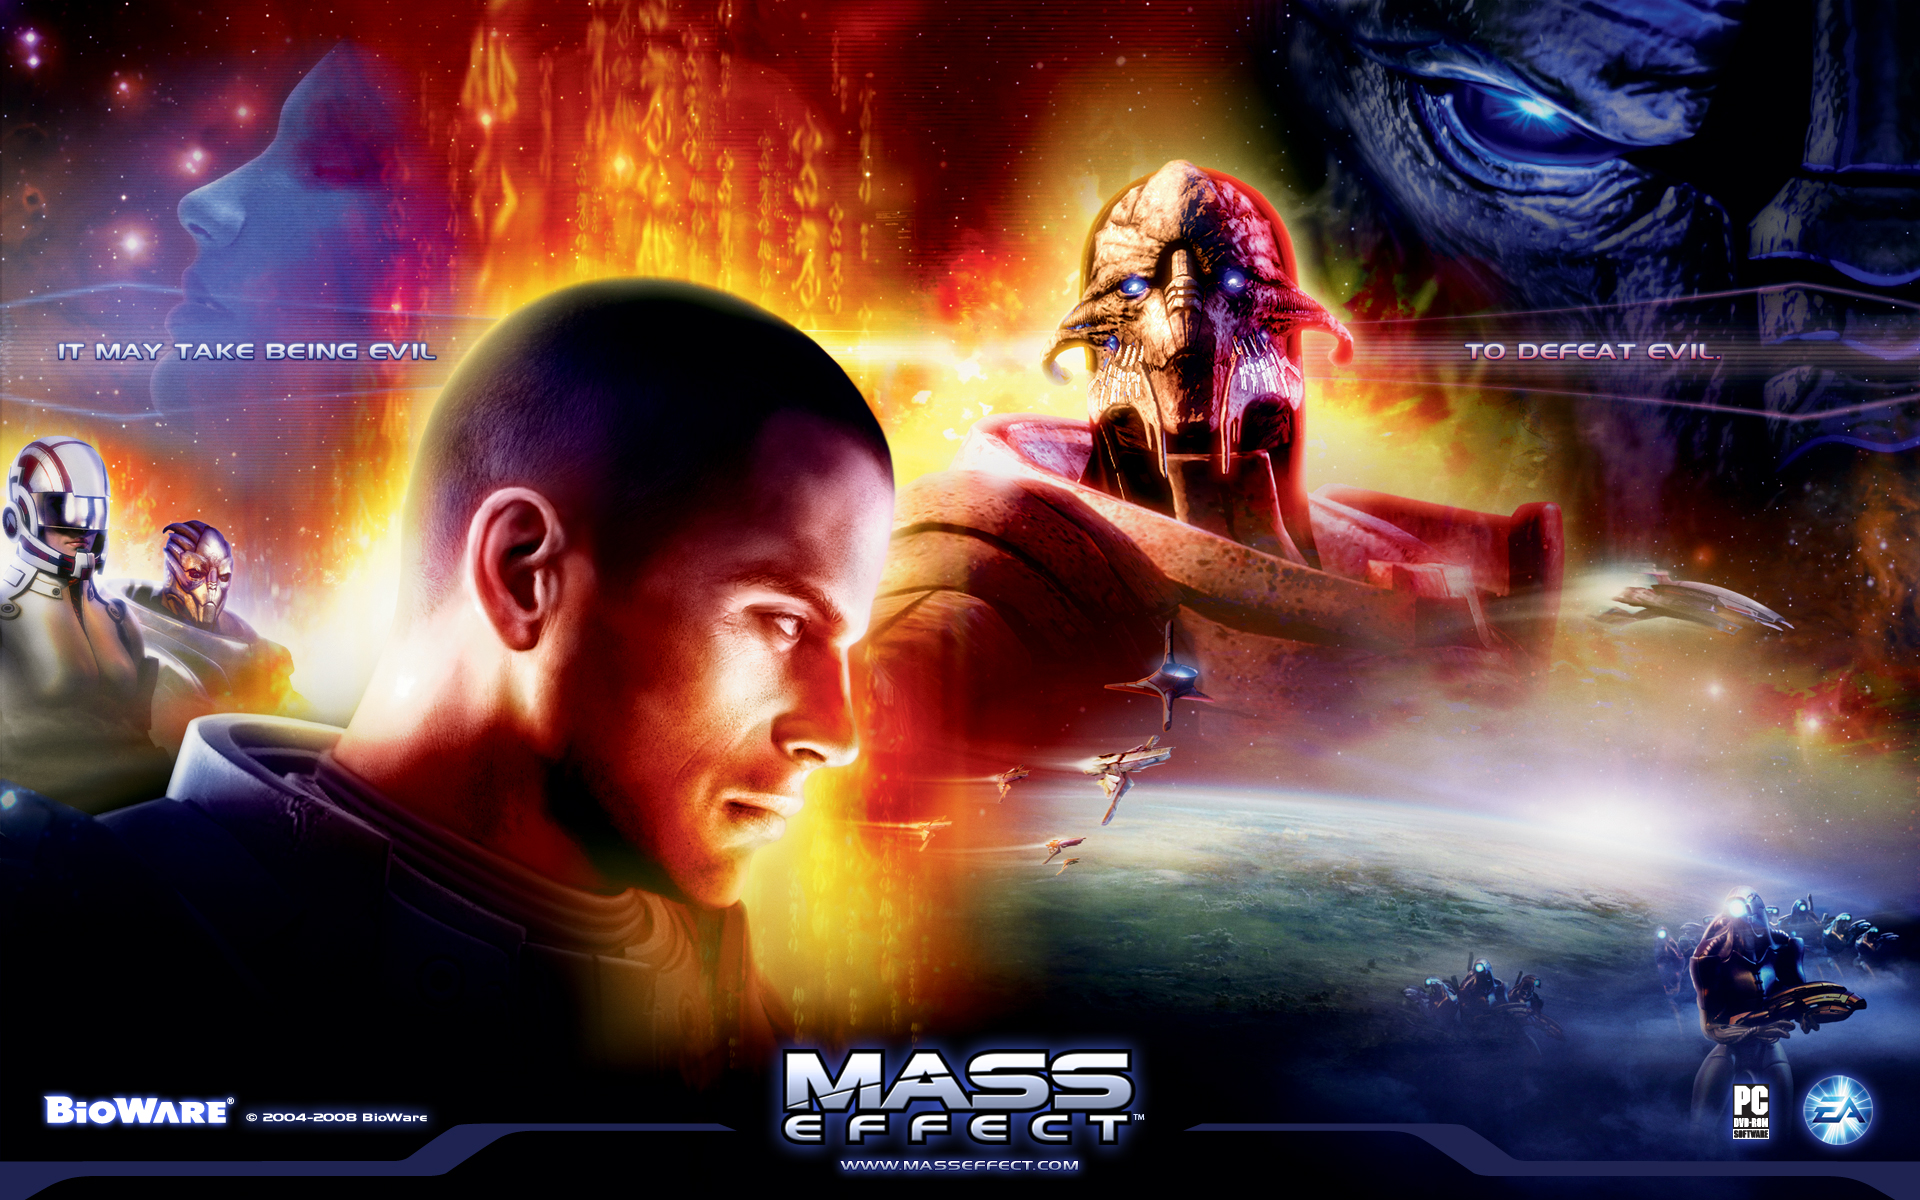 Mass Effect, BioWare, Garrus Vakarian, Commander Shepard, Ashley Williams - desktop wallpaper